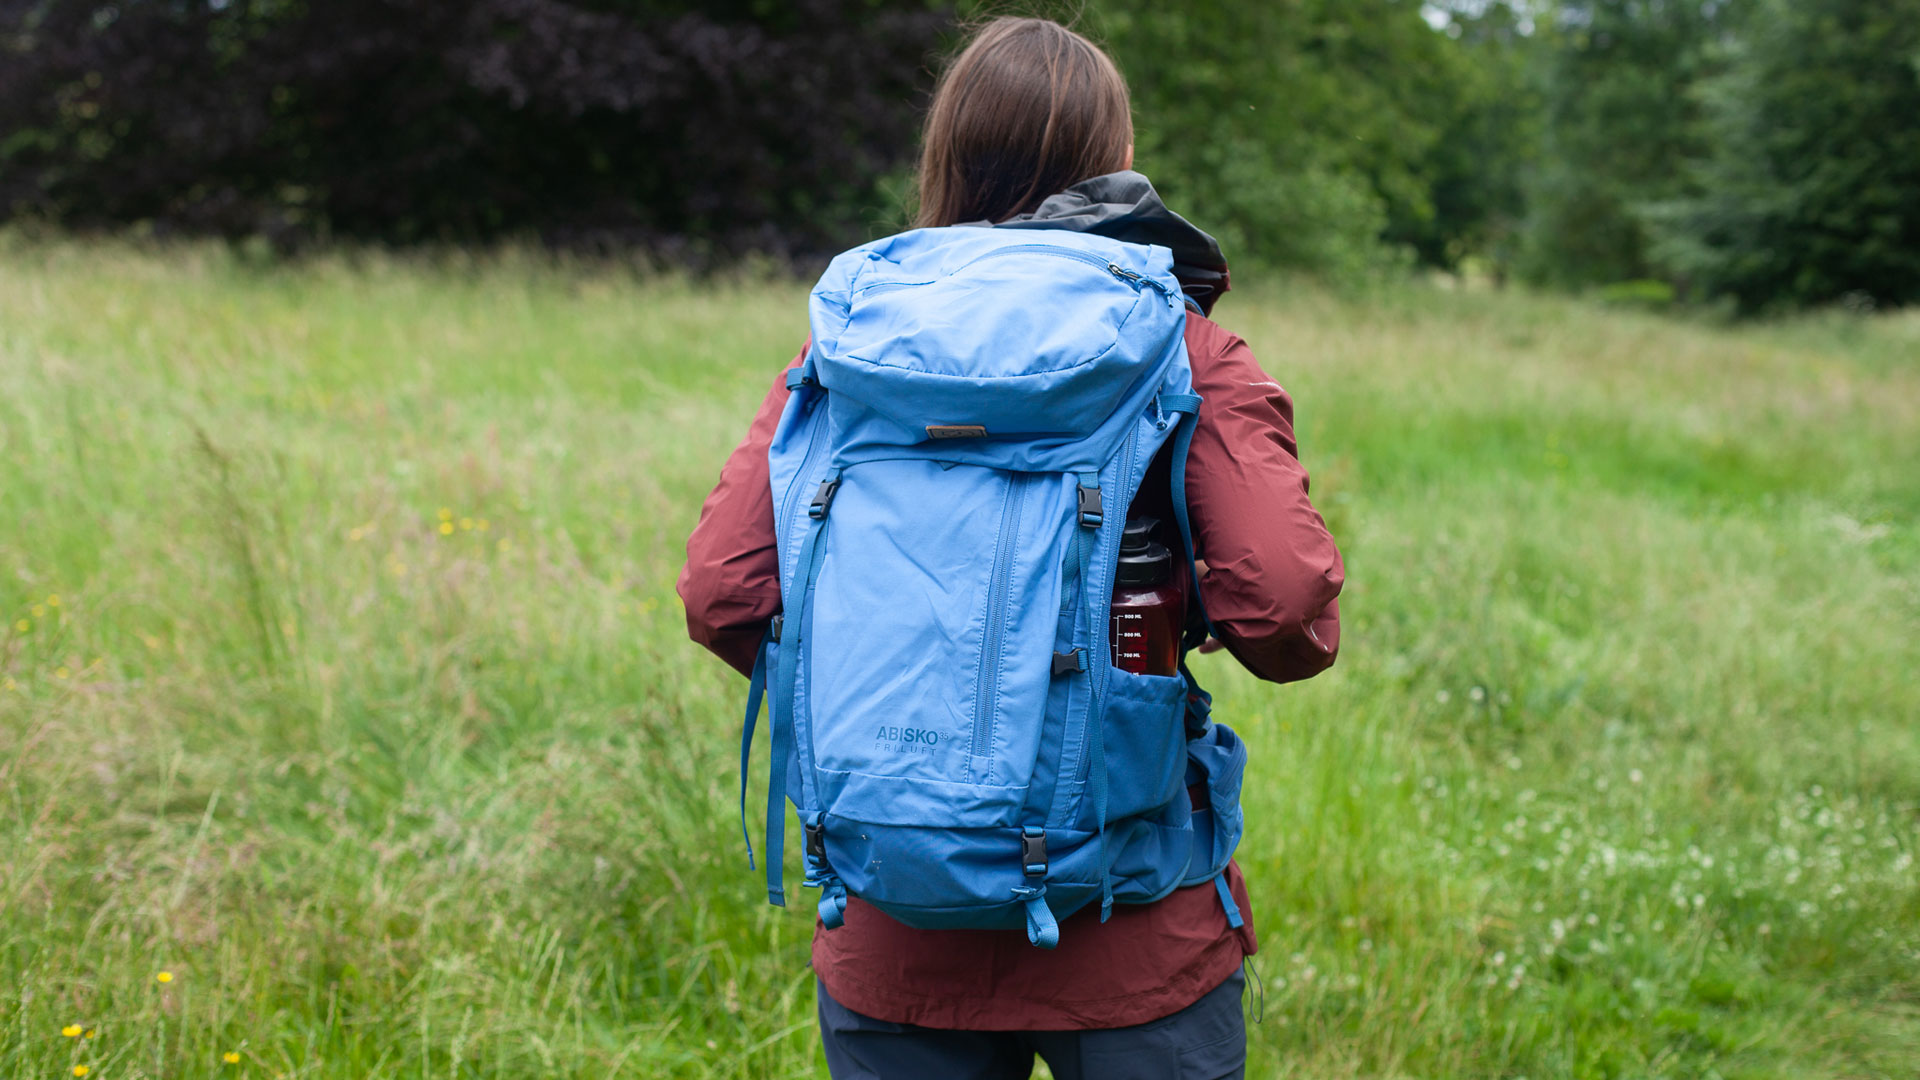 Fjallraven Abisko Friluft 35 litre backpack review: a weekend